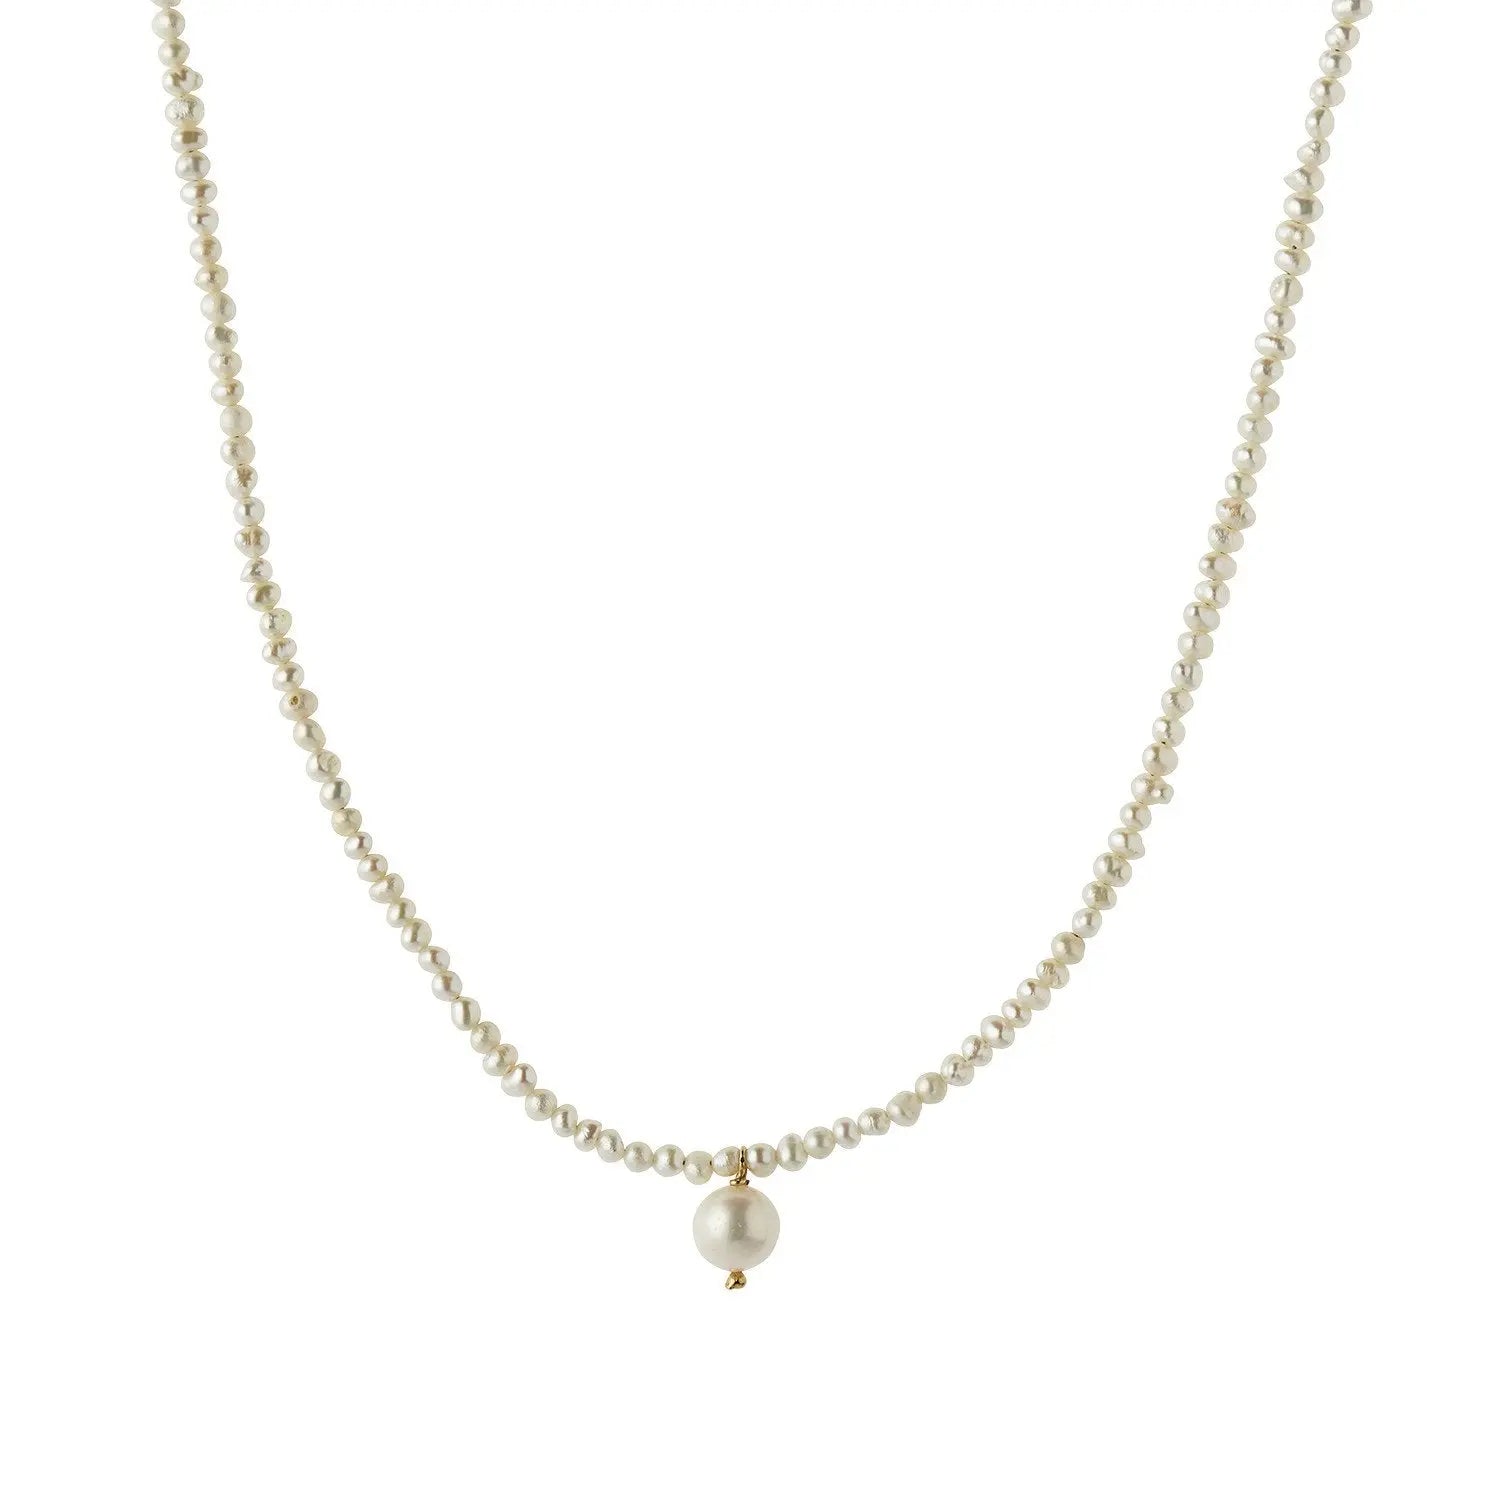 Heavenly Pearl Dream Classy halskæde - Forgyldt fra Stine A Jewelry